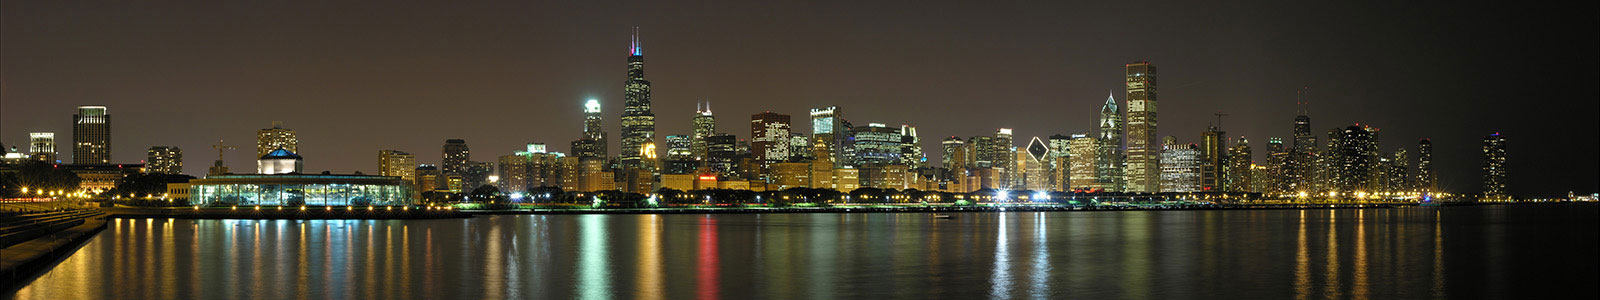 №257 - Чикаго, ночной пейзаж